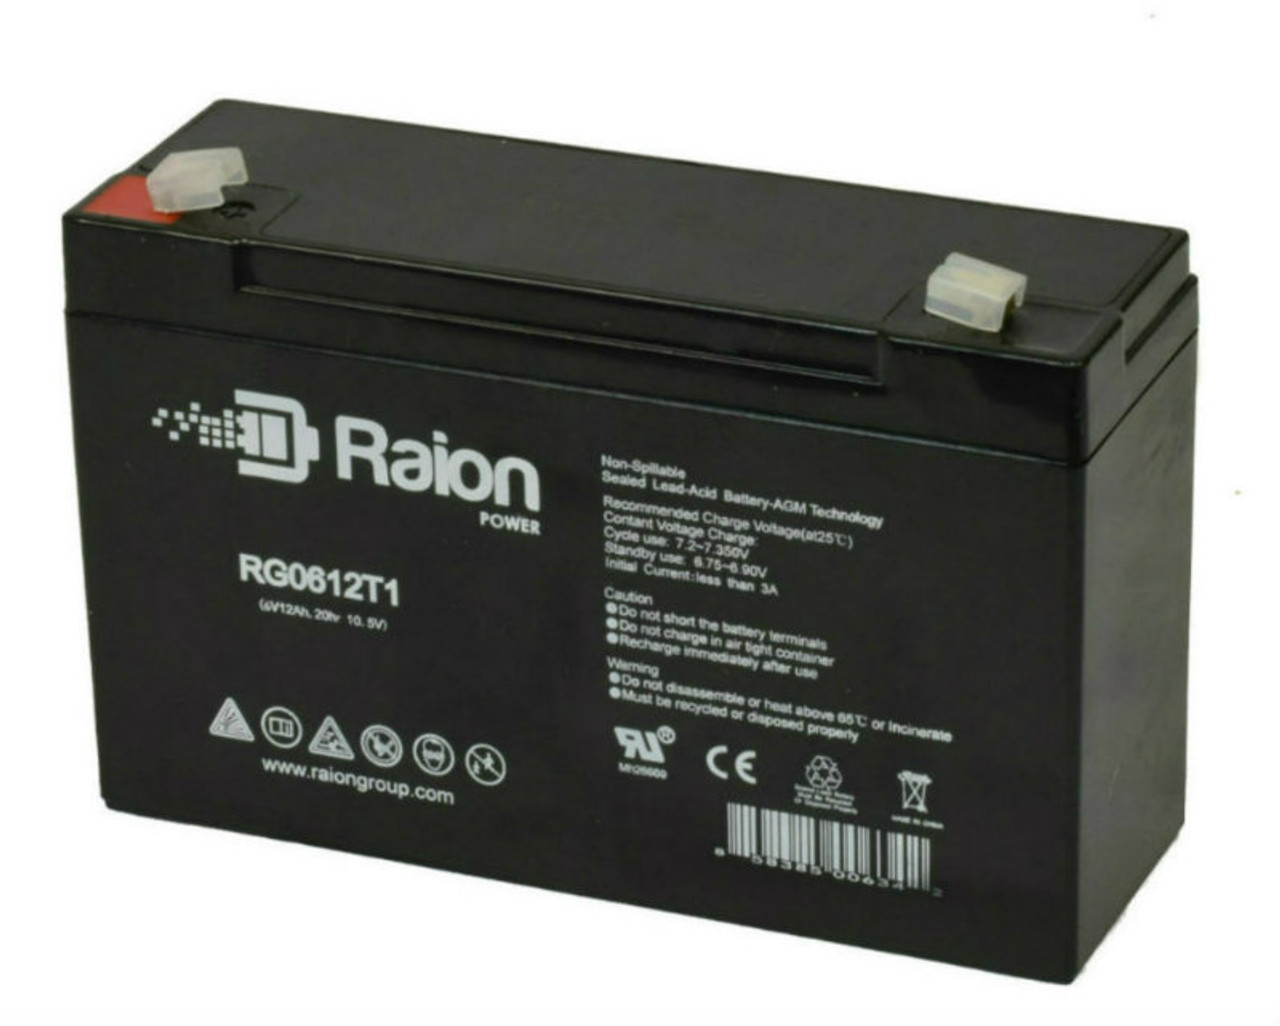 Raion Power RG06120T1 Replacement 6V 12Ah Emergency Light Battery for Emergi-Lite DSM-36